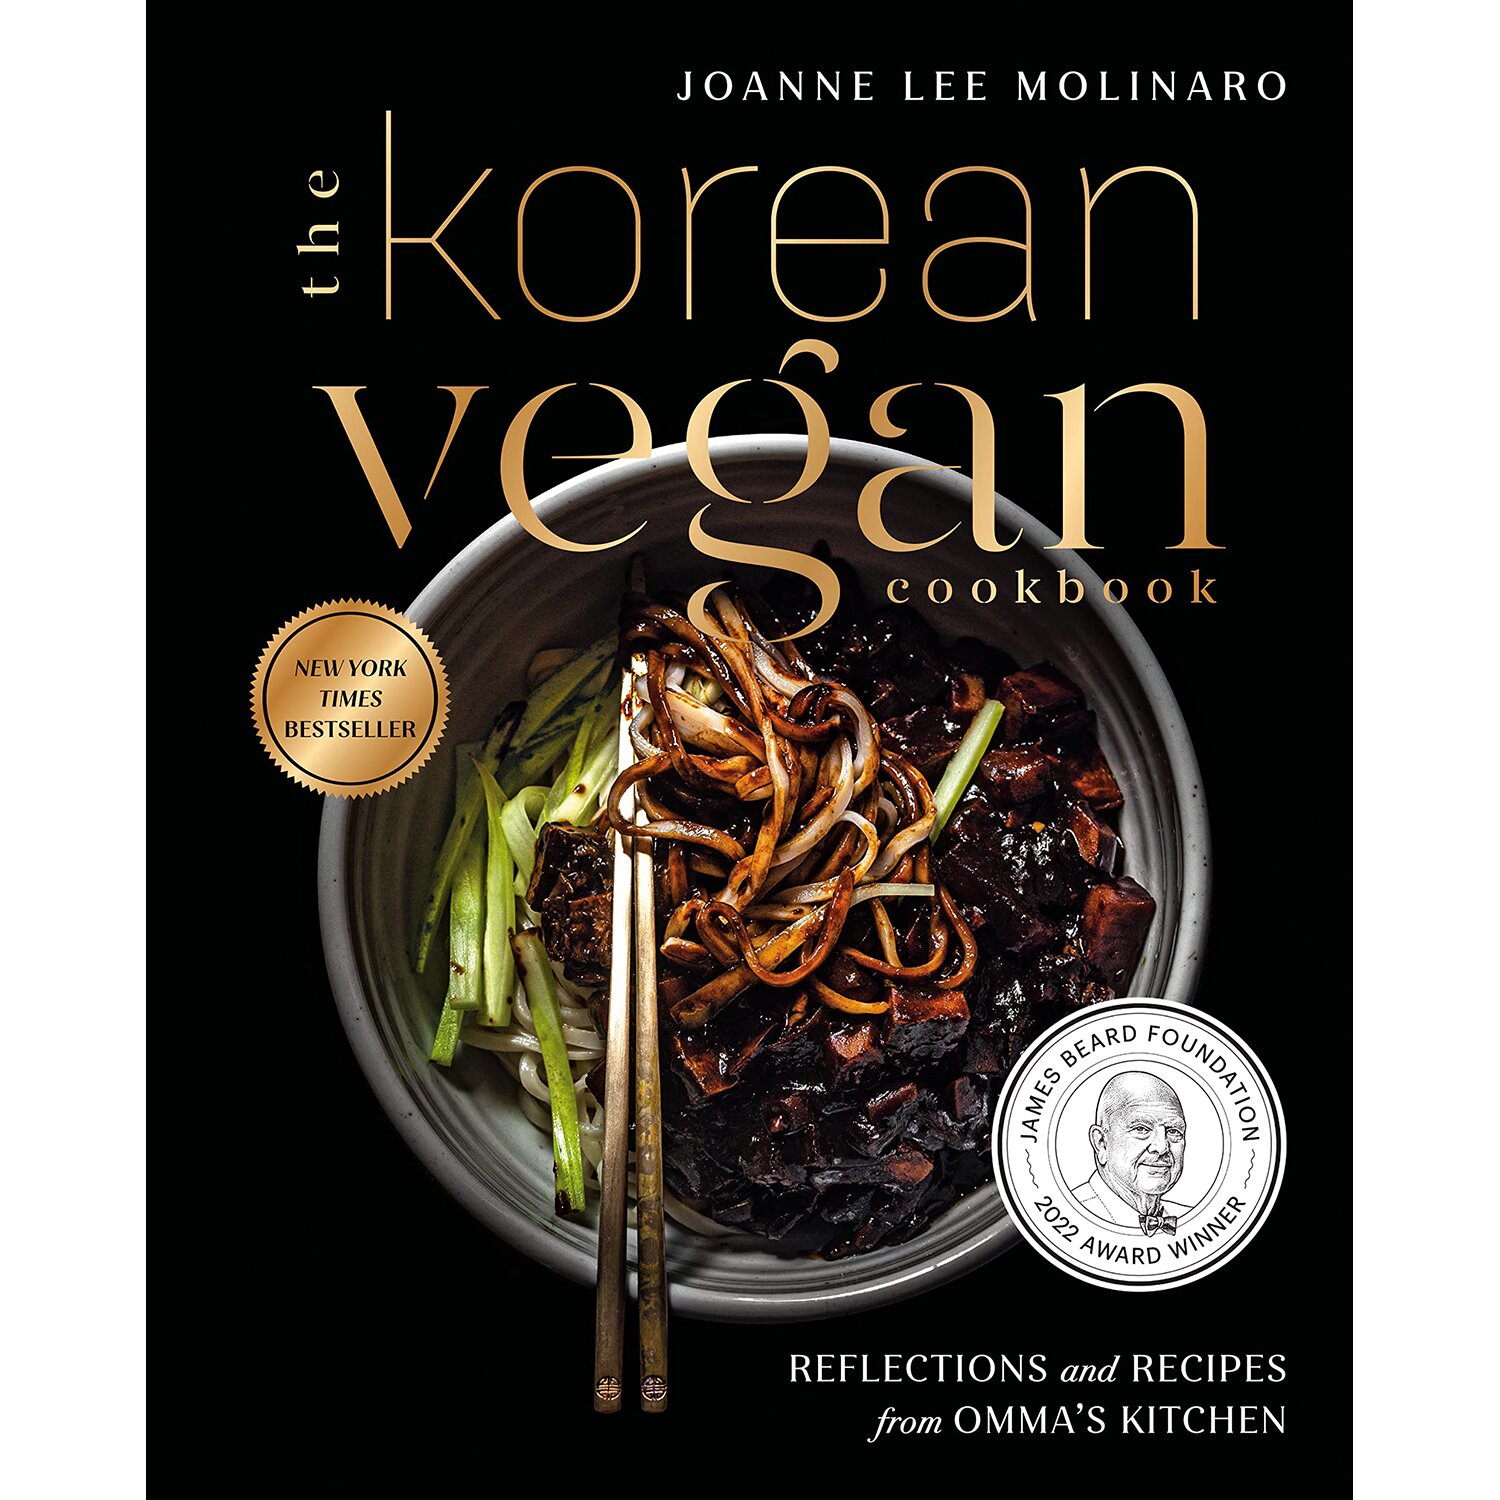 Great Vegan Cookbooks